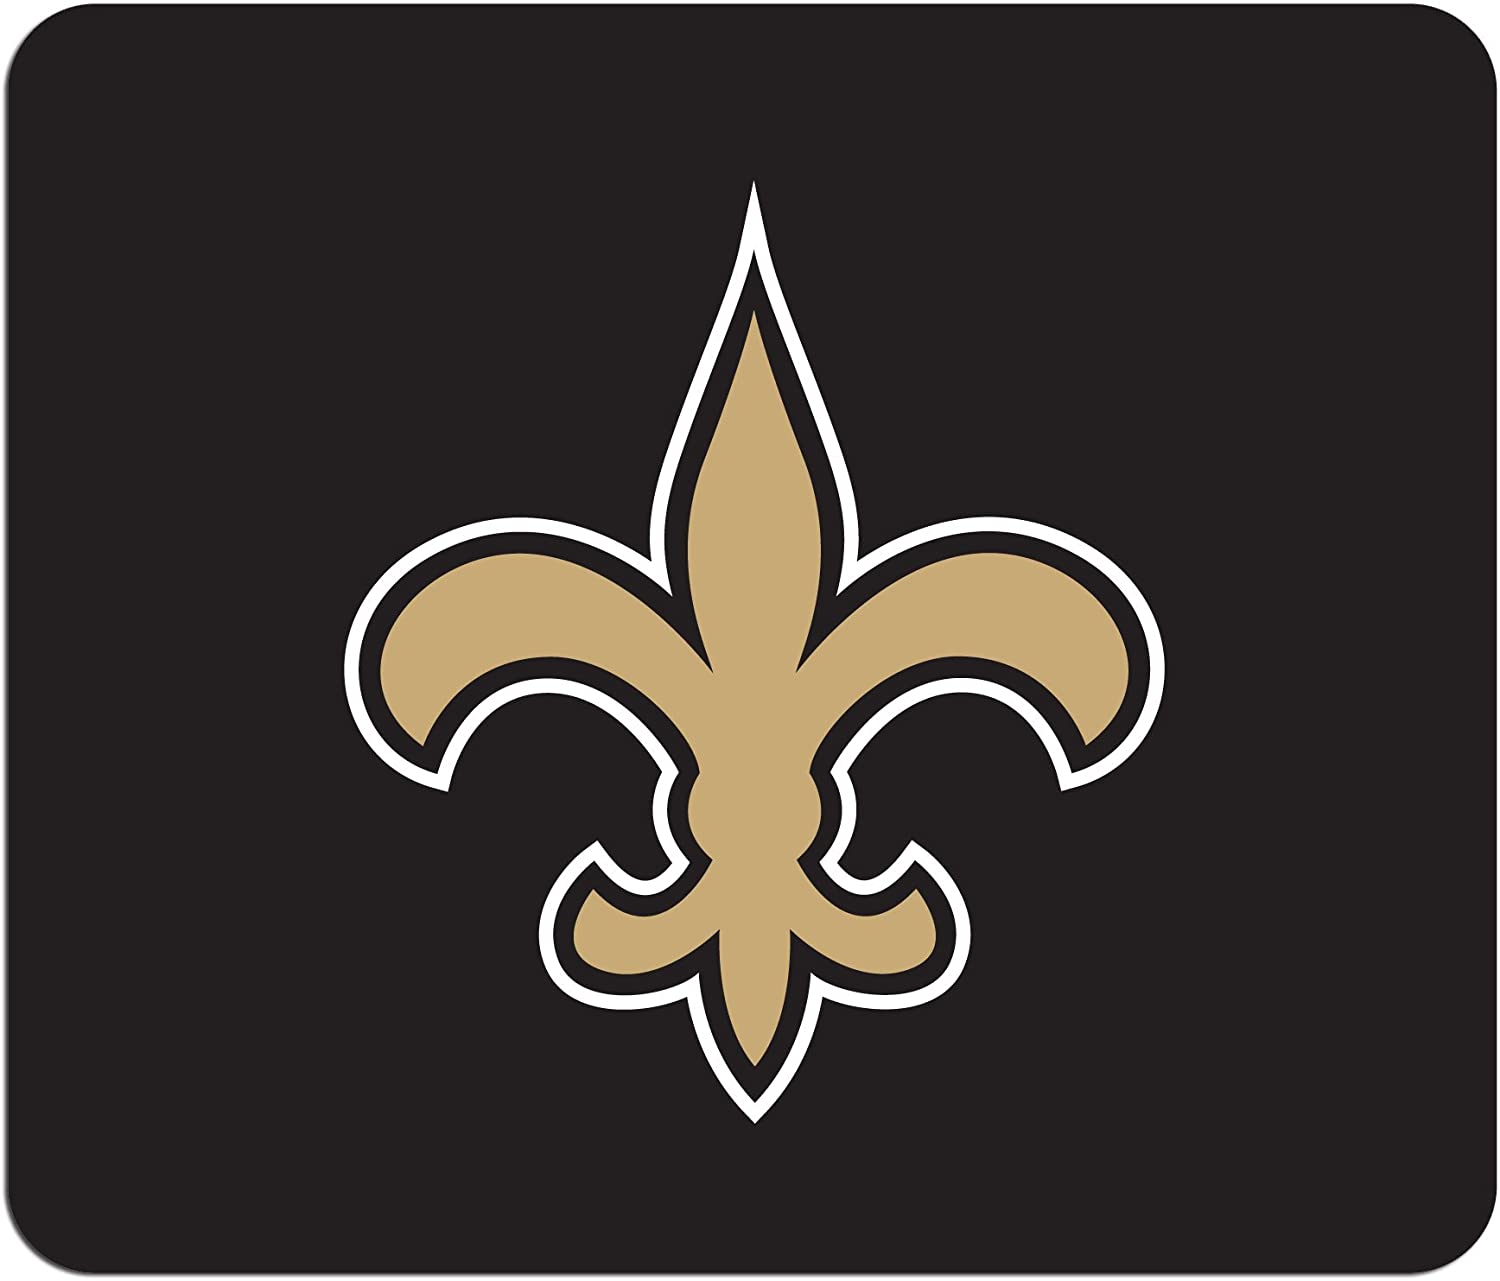 New Orleans Saints NFL
